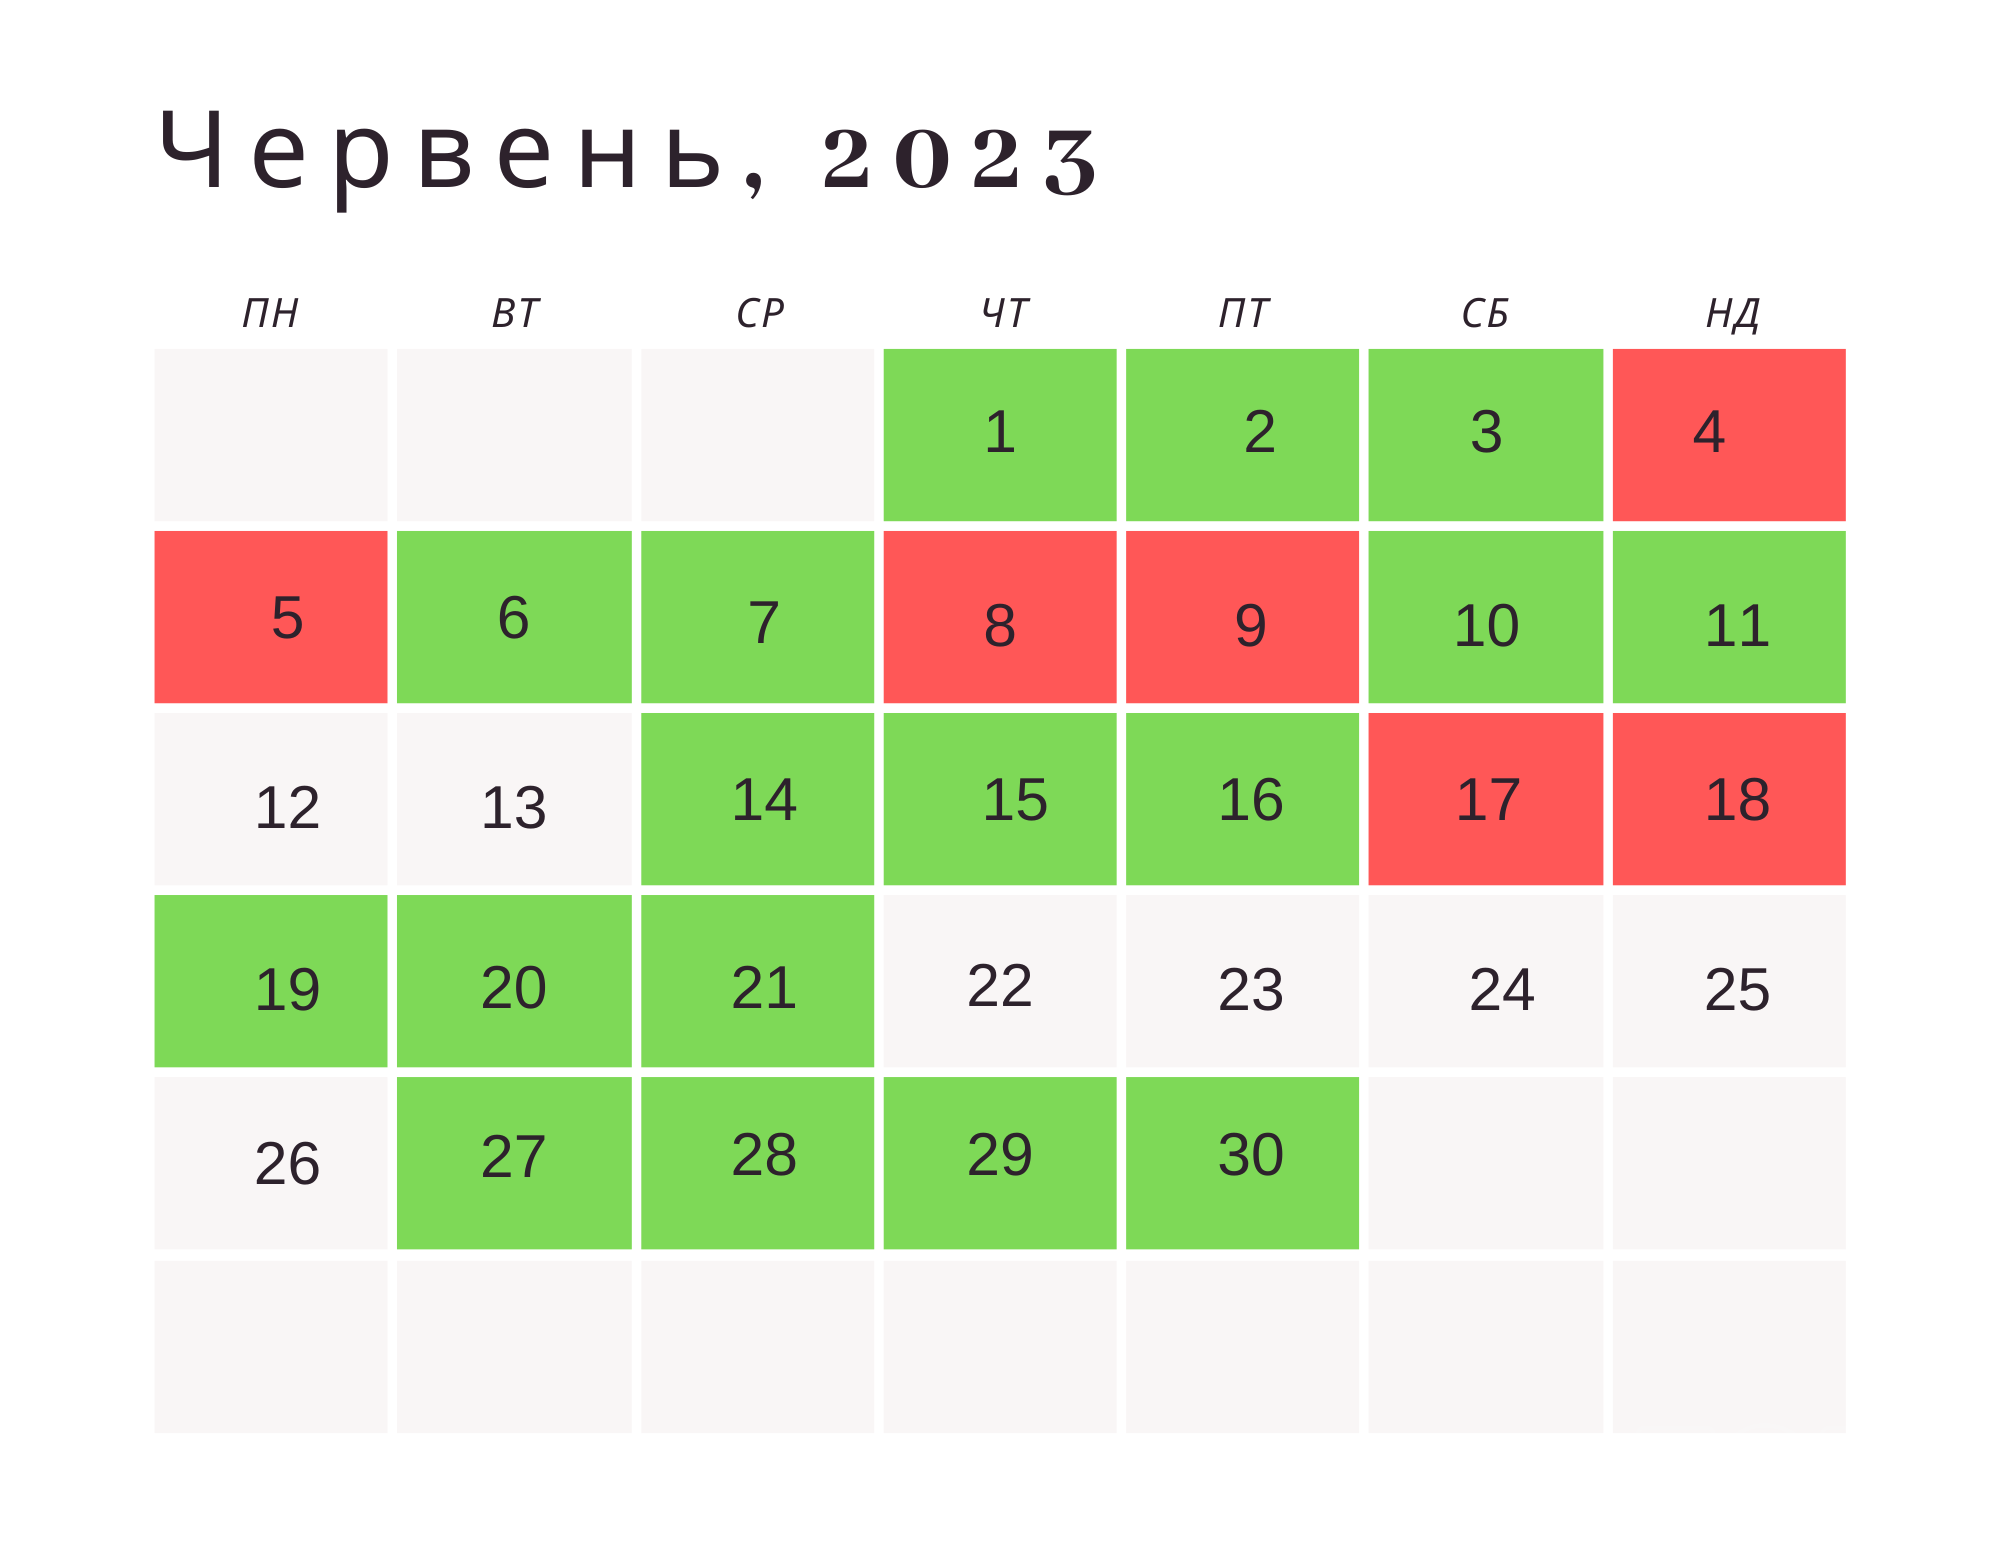 Місячний посівний календар на червень 2023 року / © ТСН.ua